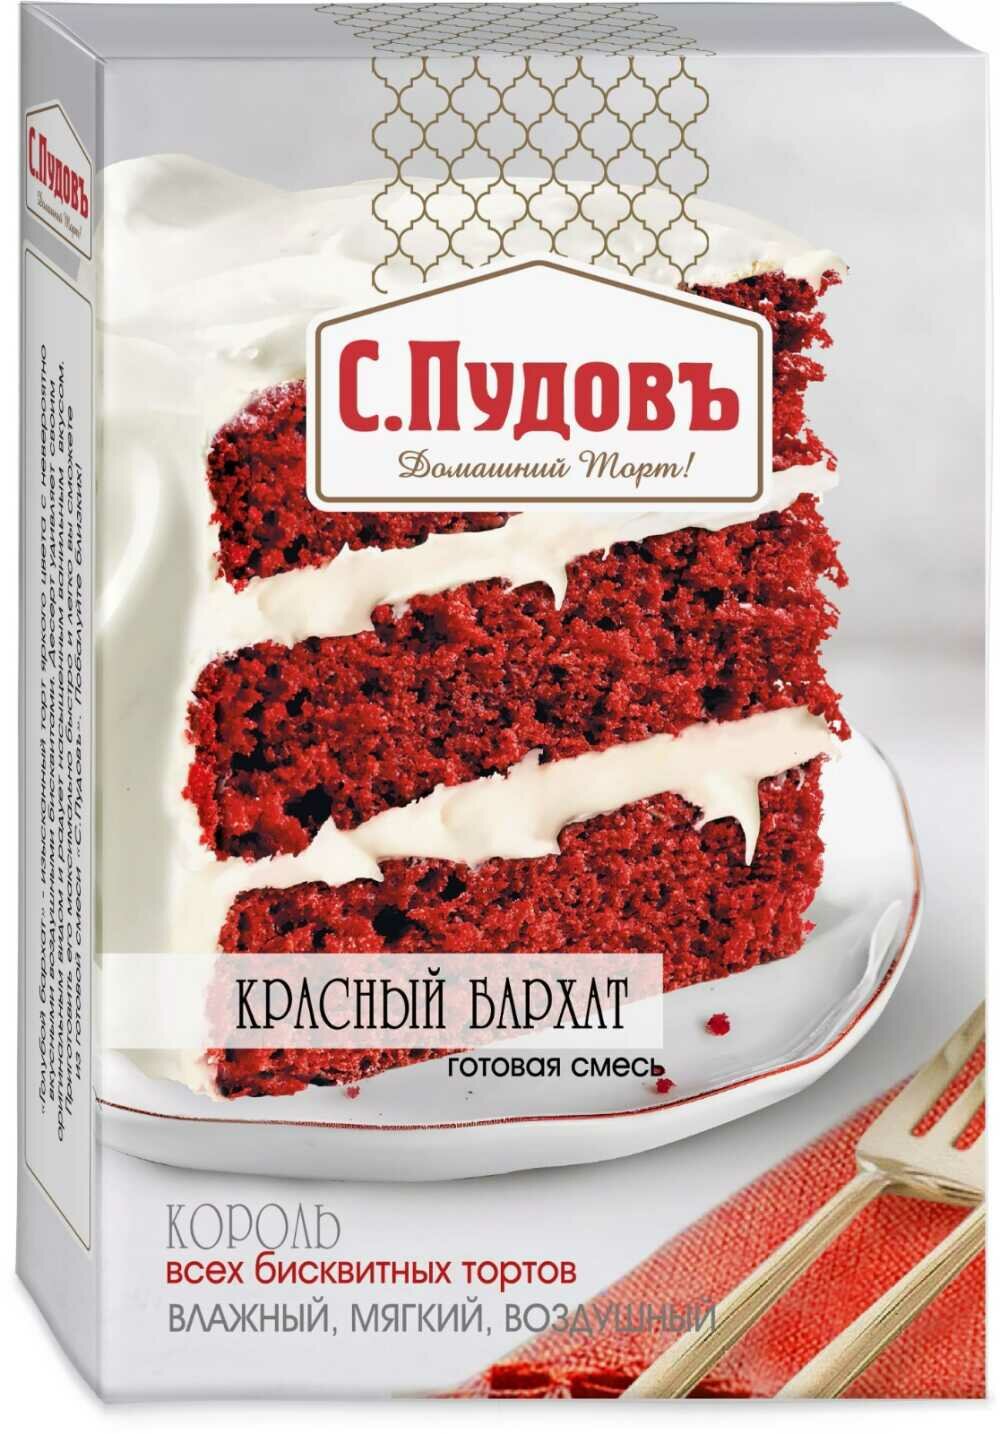 Торт Красный бархат готовая смесь С. Пудовъ 400 гр.